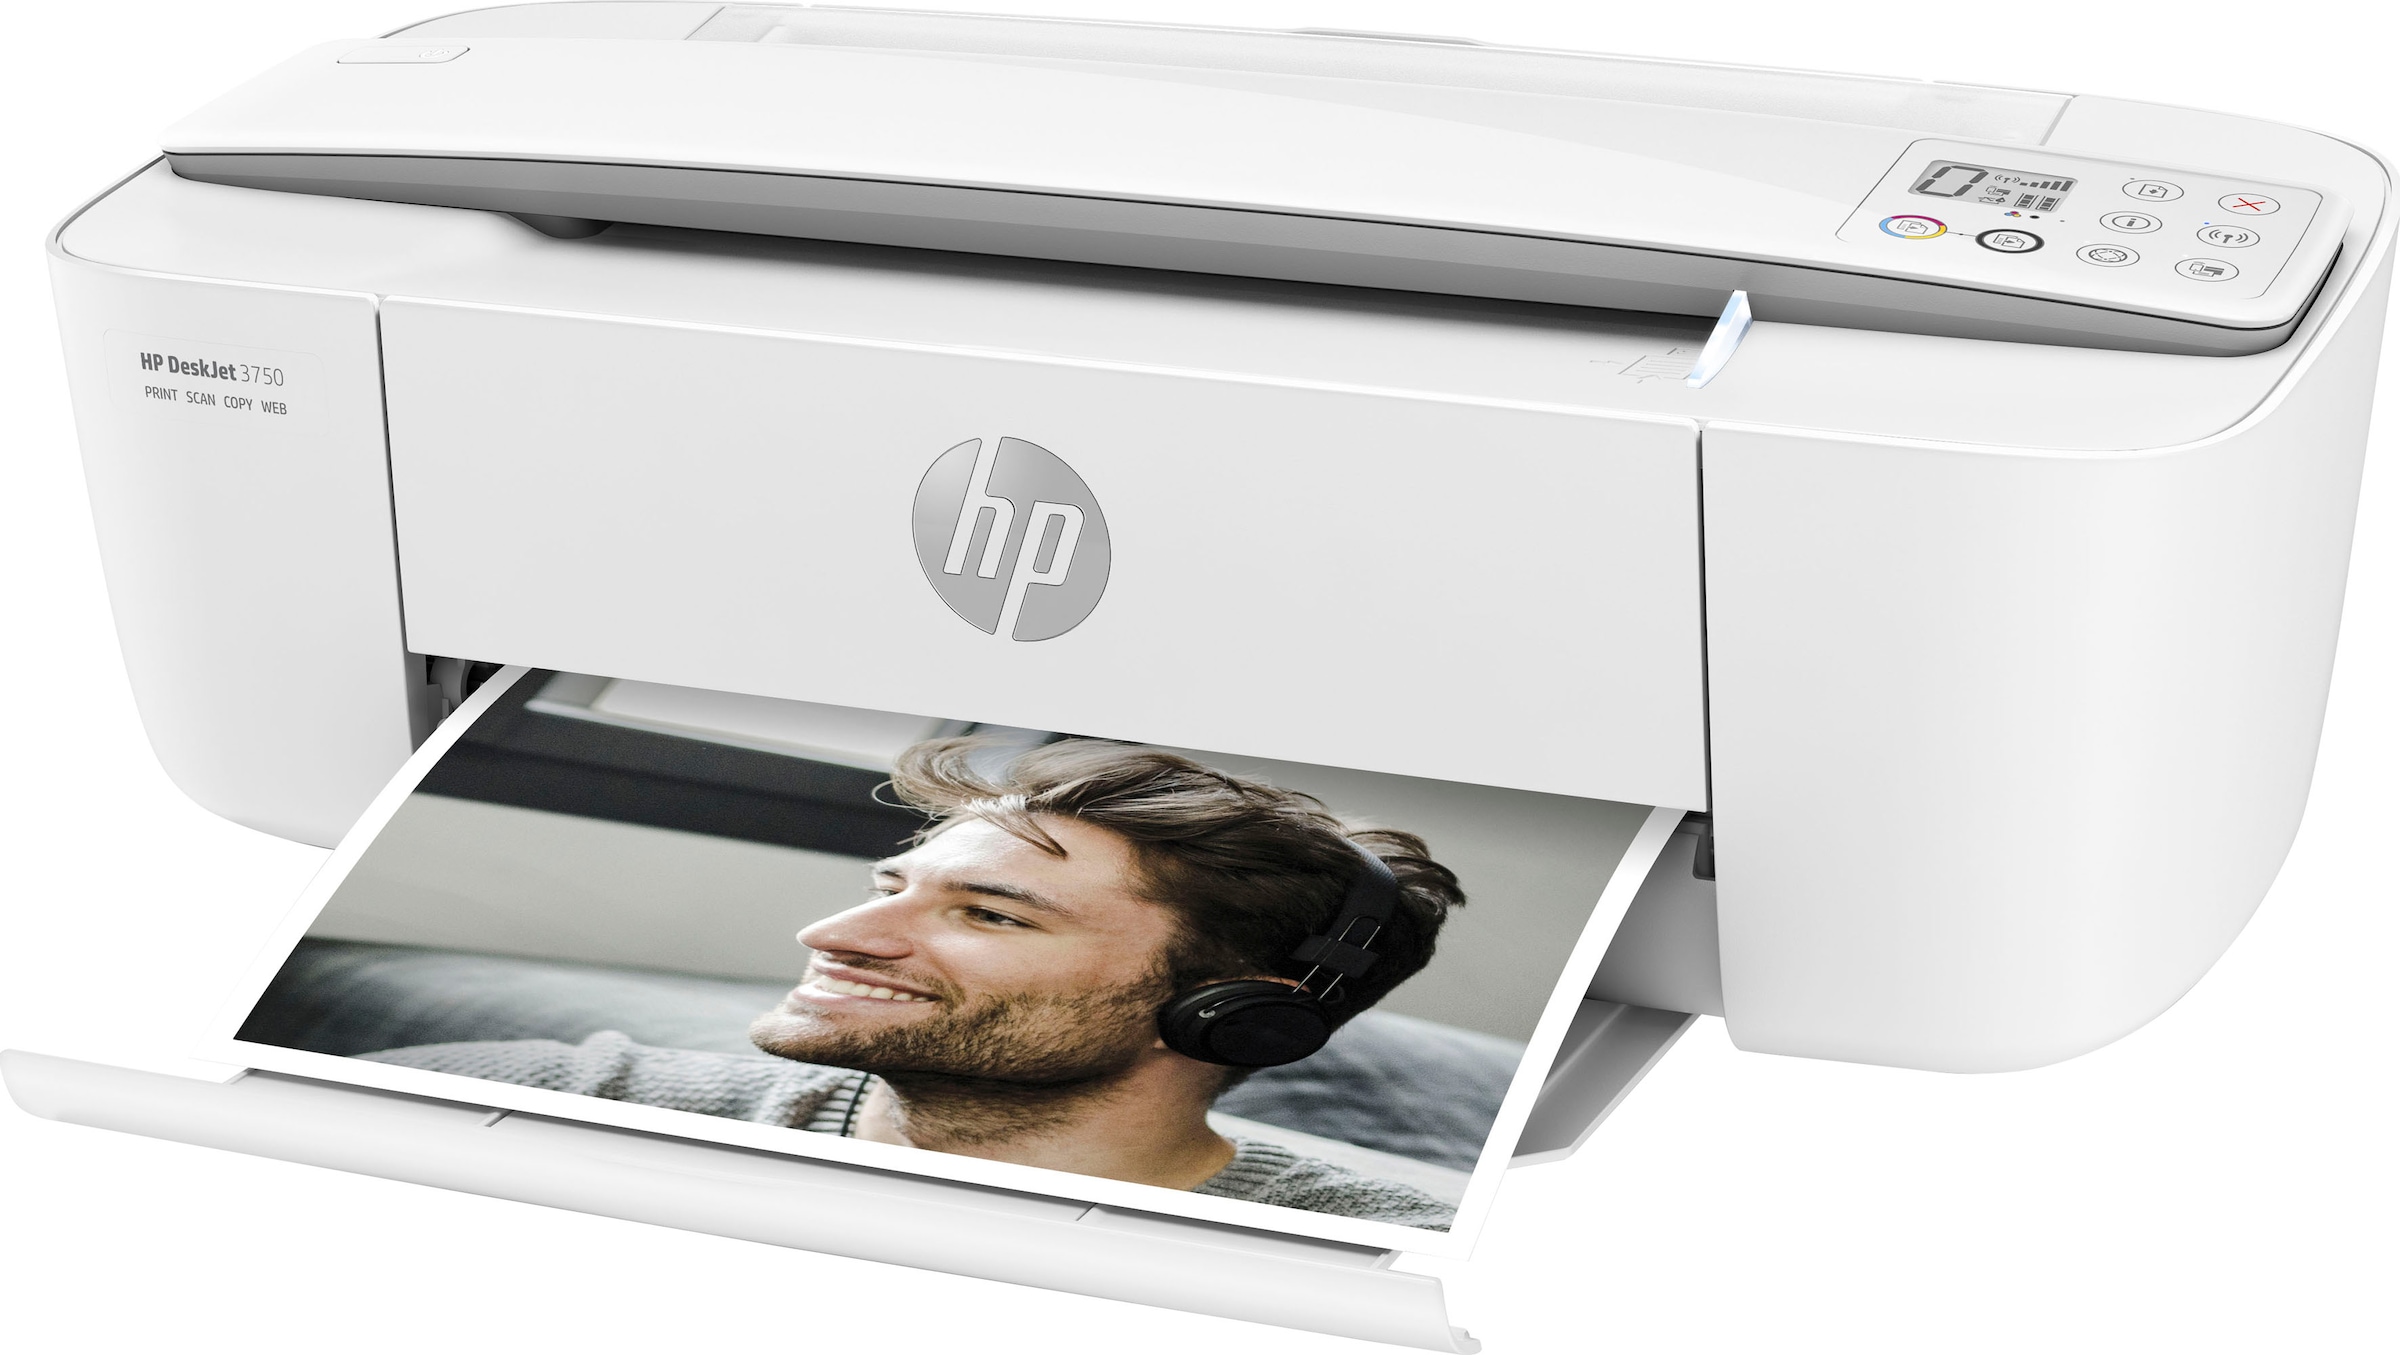 HP Multifunktionsdrucker »Drucker DeskJet 3750«